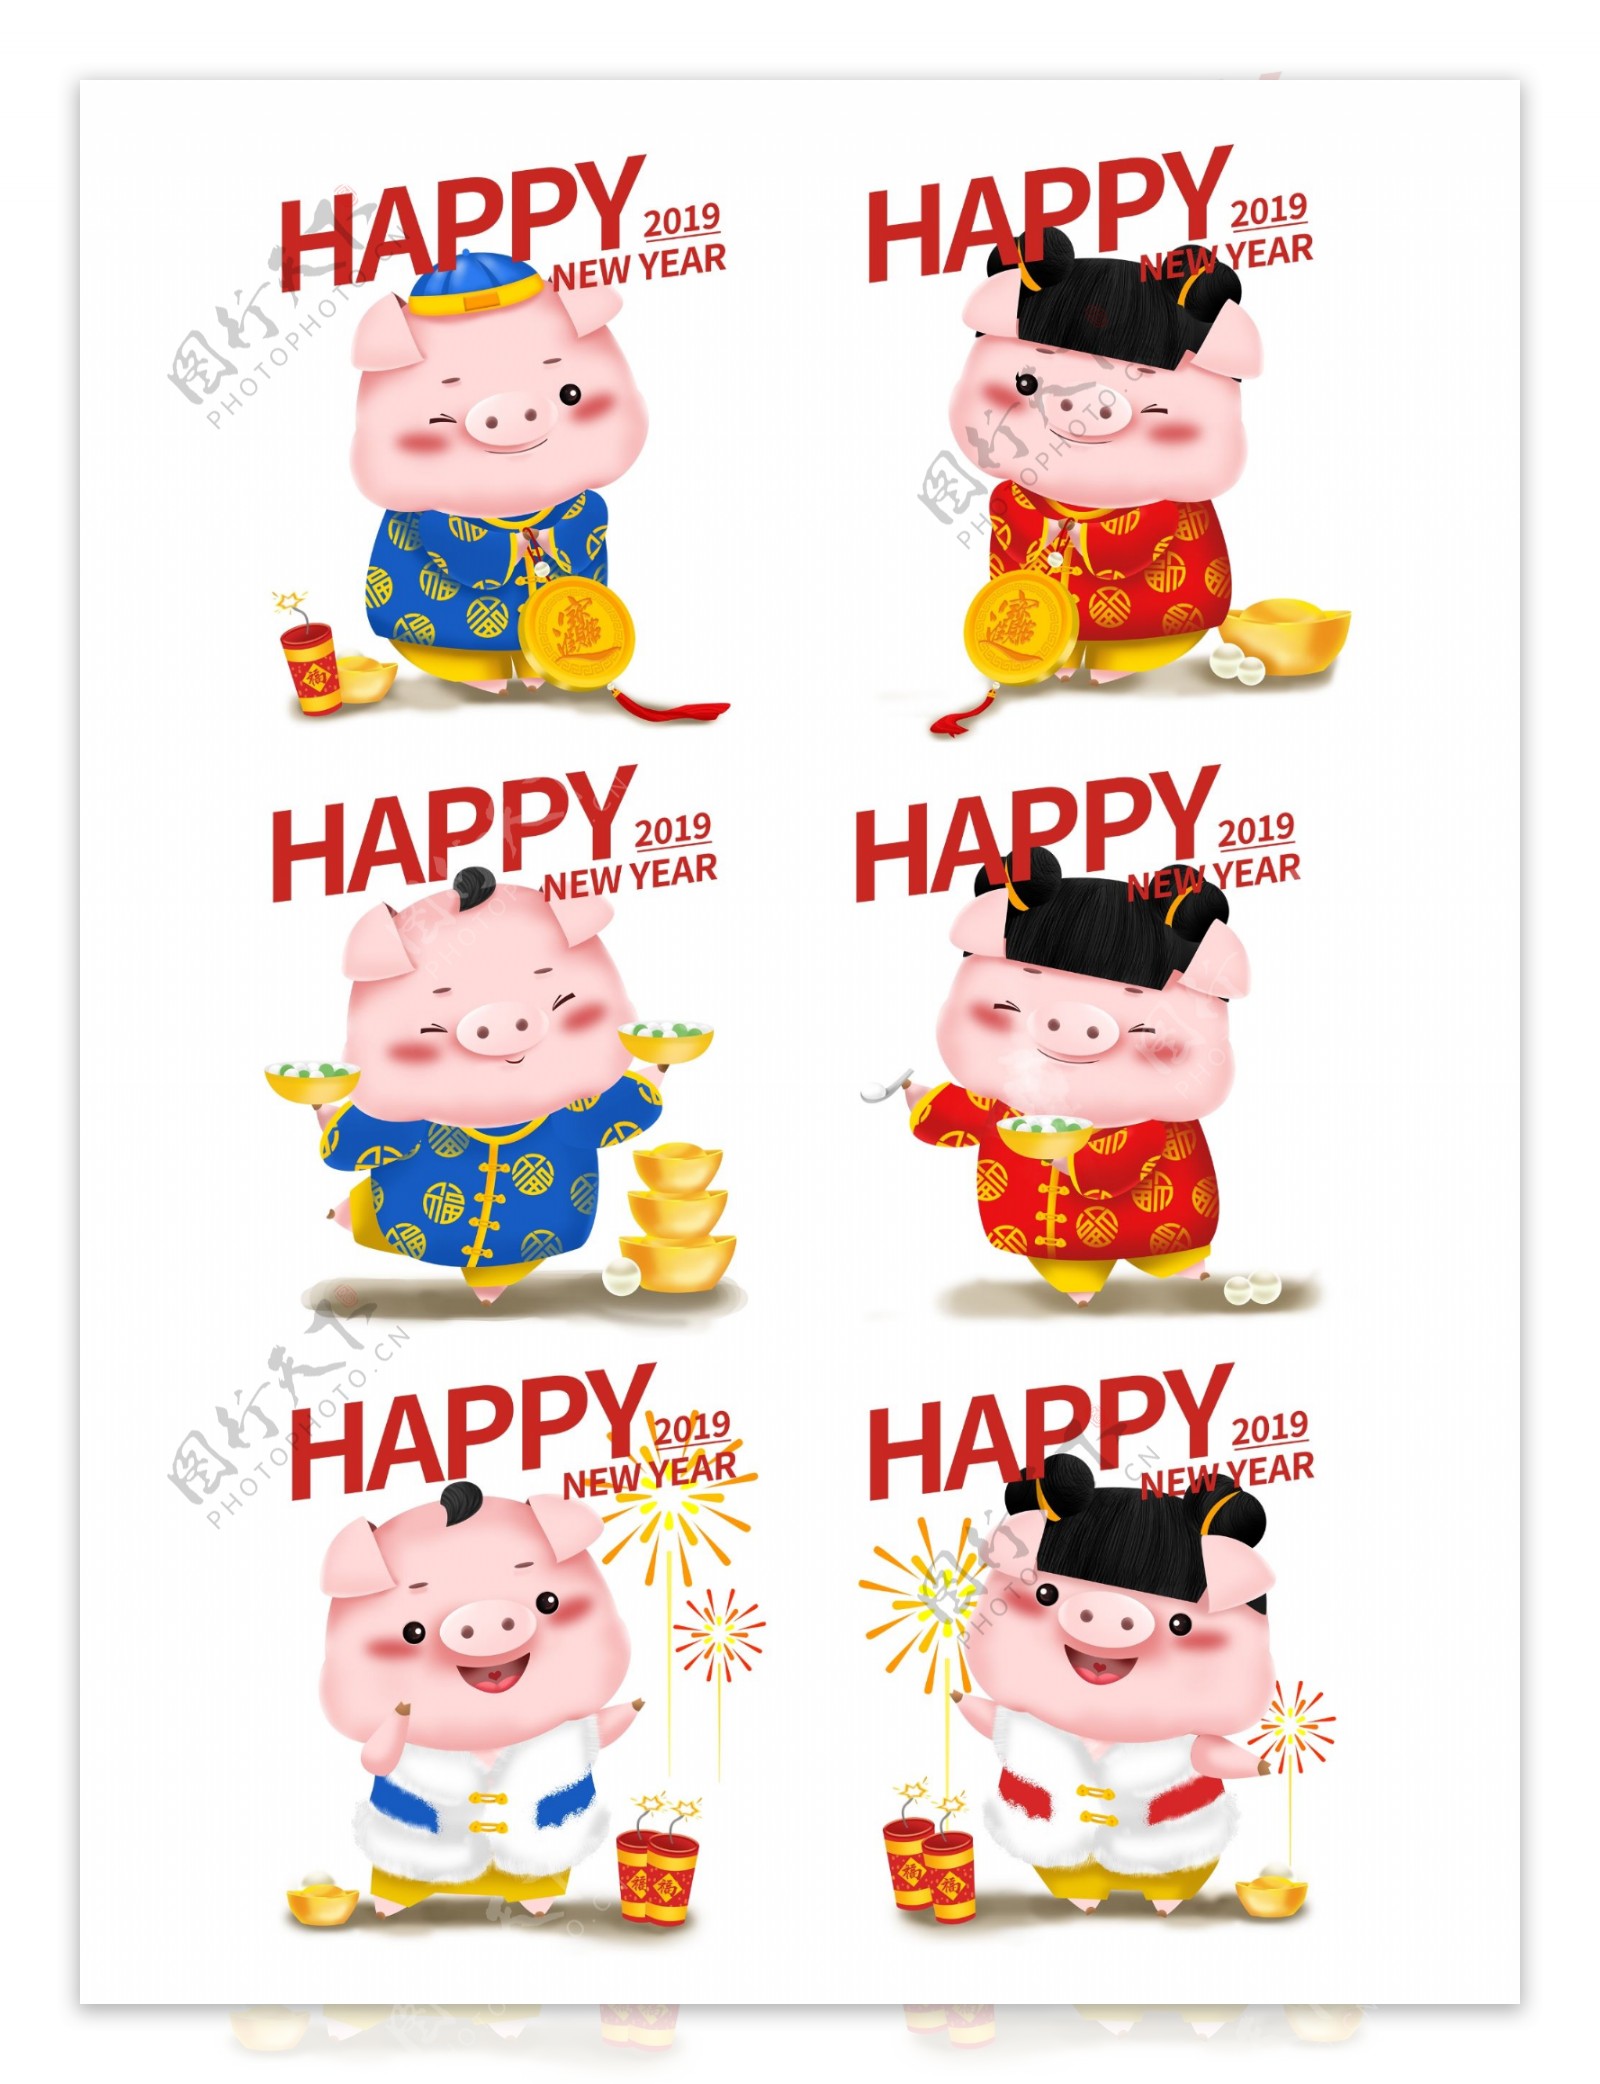 新年可爱猪立体IP卡通形象插画福娃合集